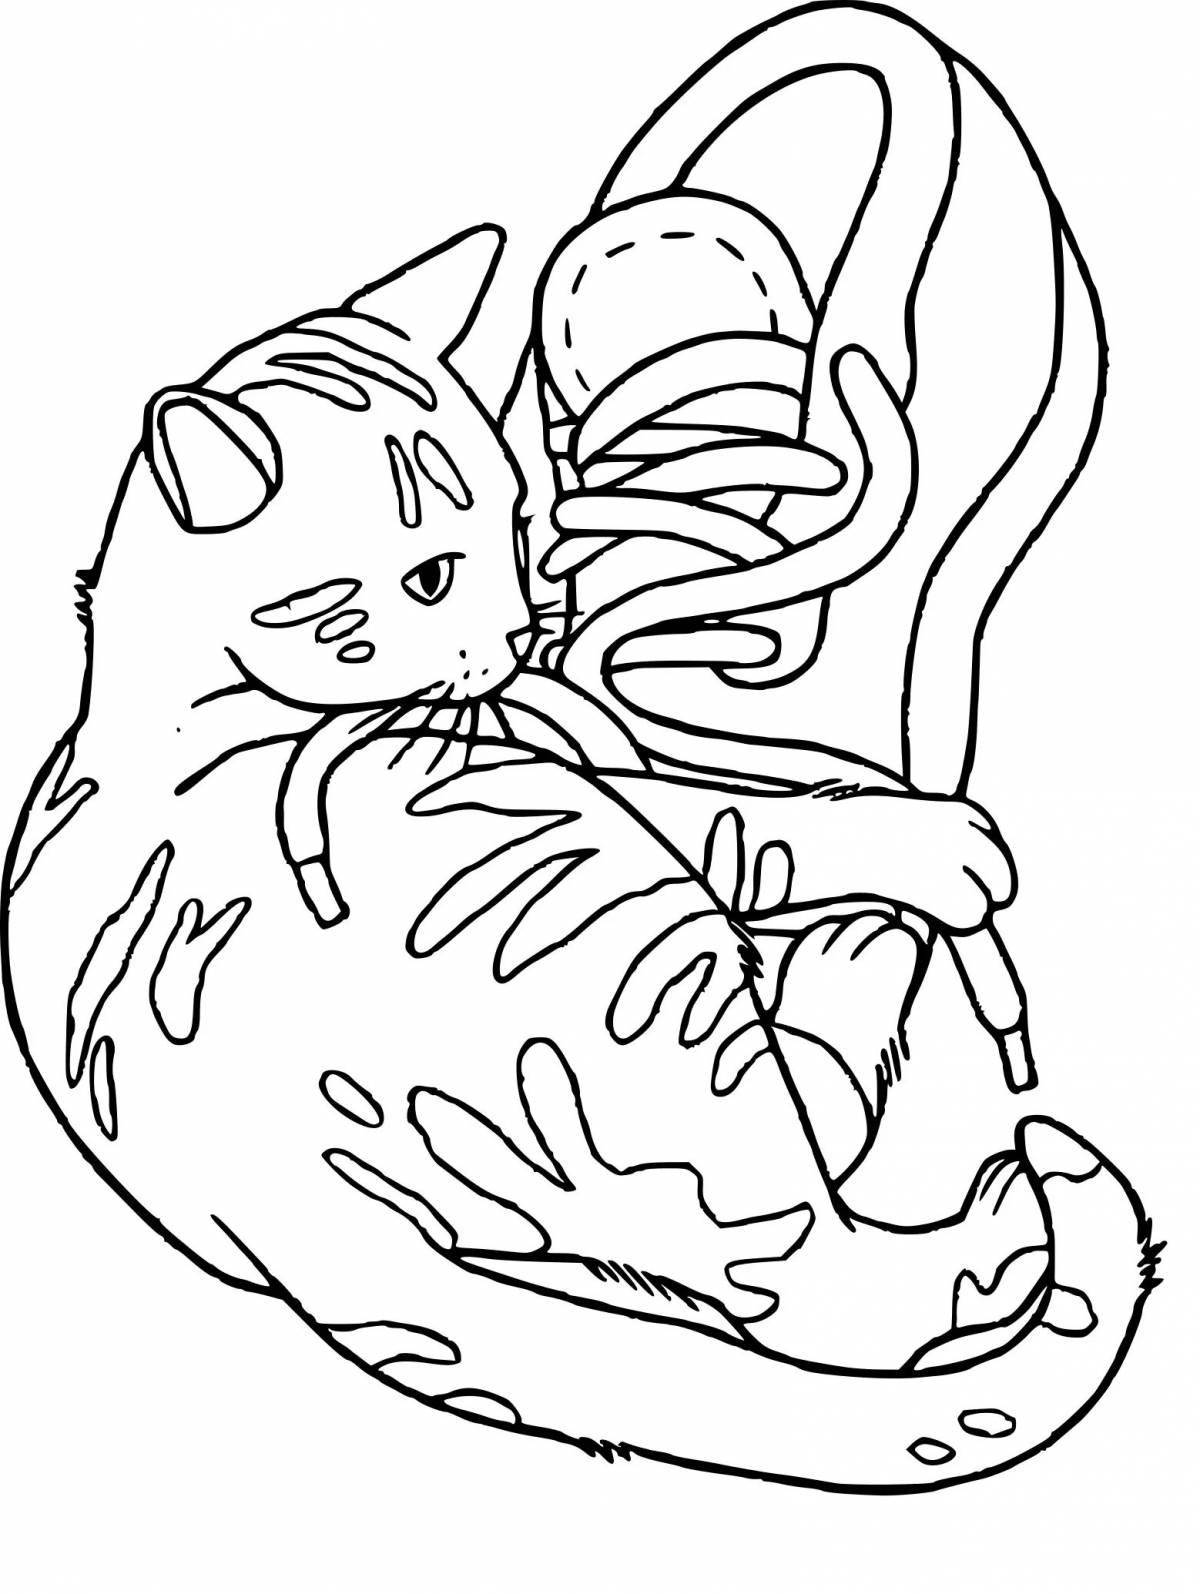 Причудливая раскраска котенка мерч